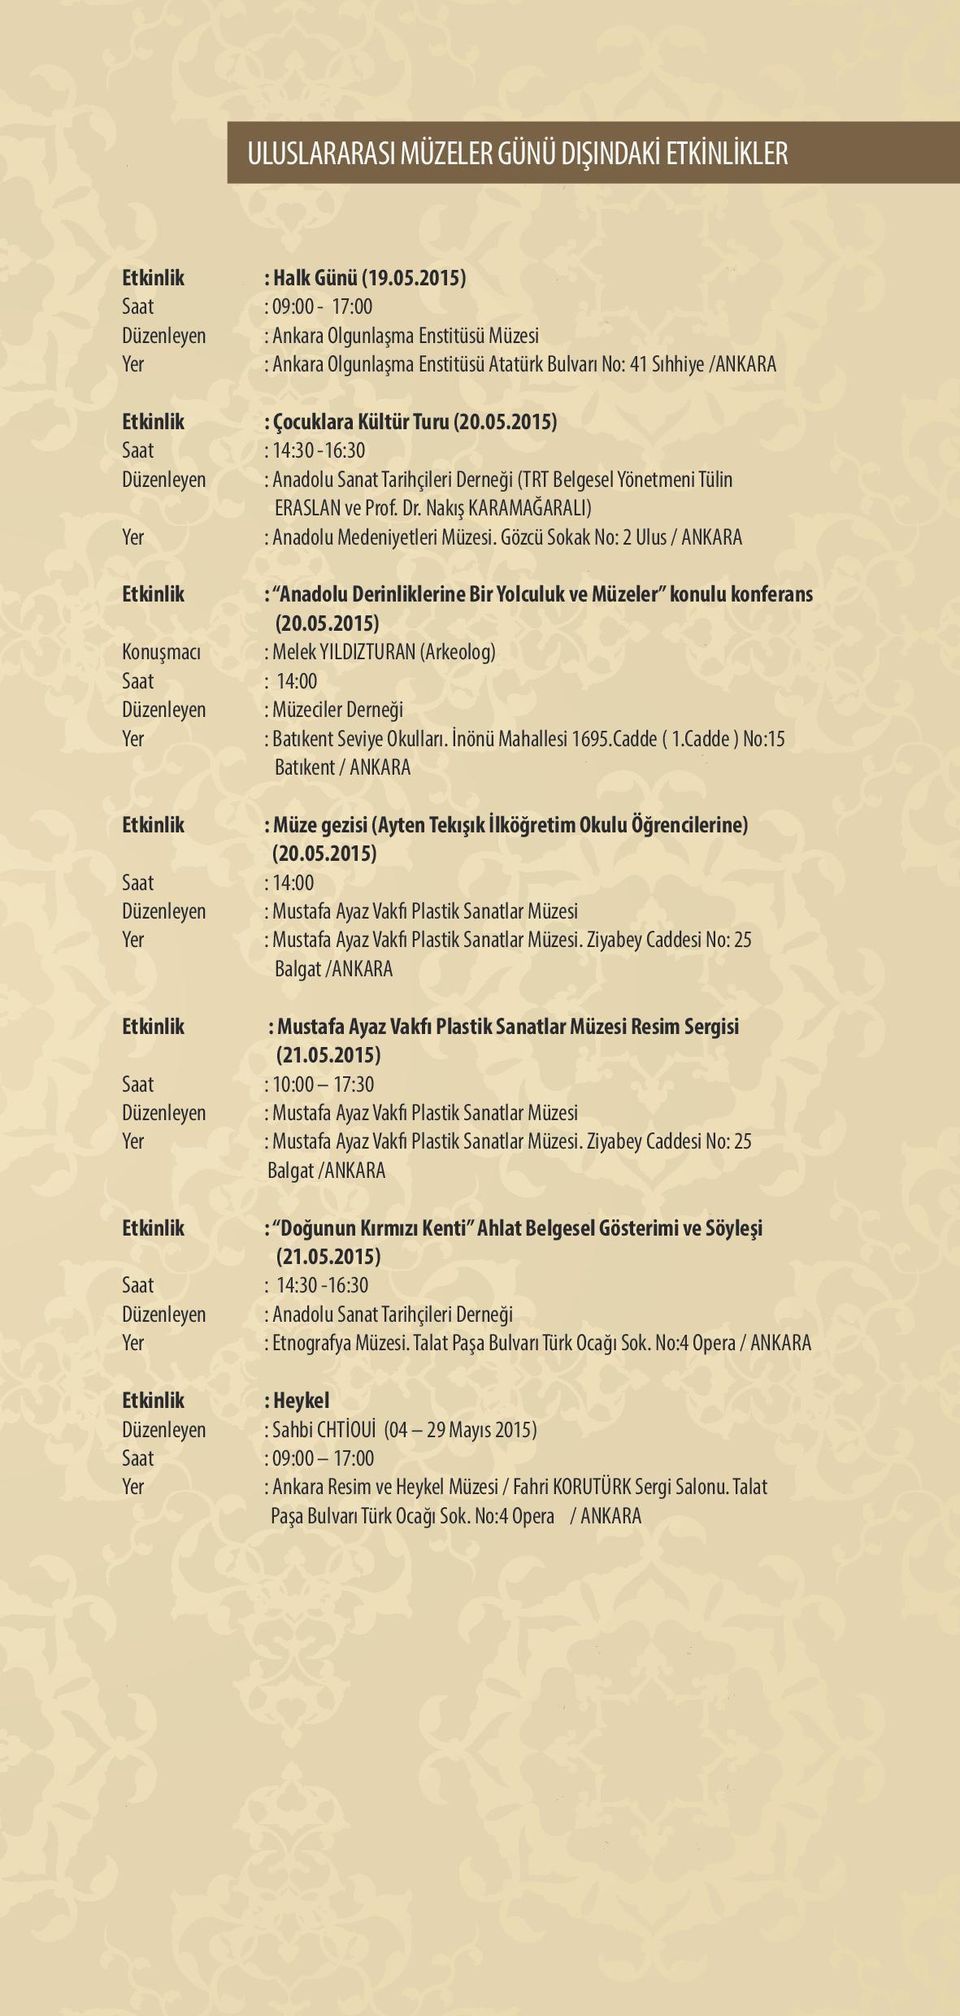 2015) Saat : 14:30-16:30 Düzenleyen : Anadolu Sanat Tarihçileri Derneği (TRT Belgesel Yönetmeni Tülin ERASLAN ve Prof. Dr. Nakış KARAMAĞARALI) : Anadolu Medeniyetleri Müzesi.